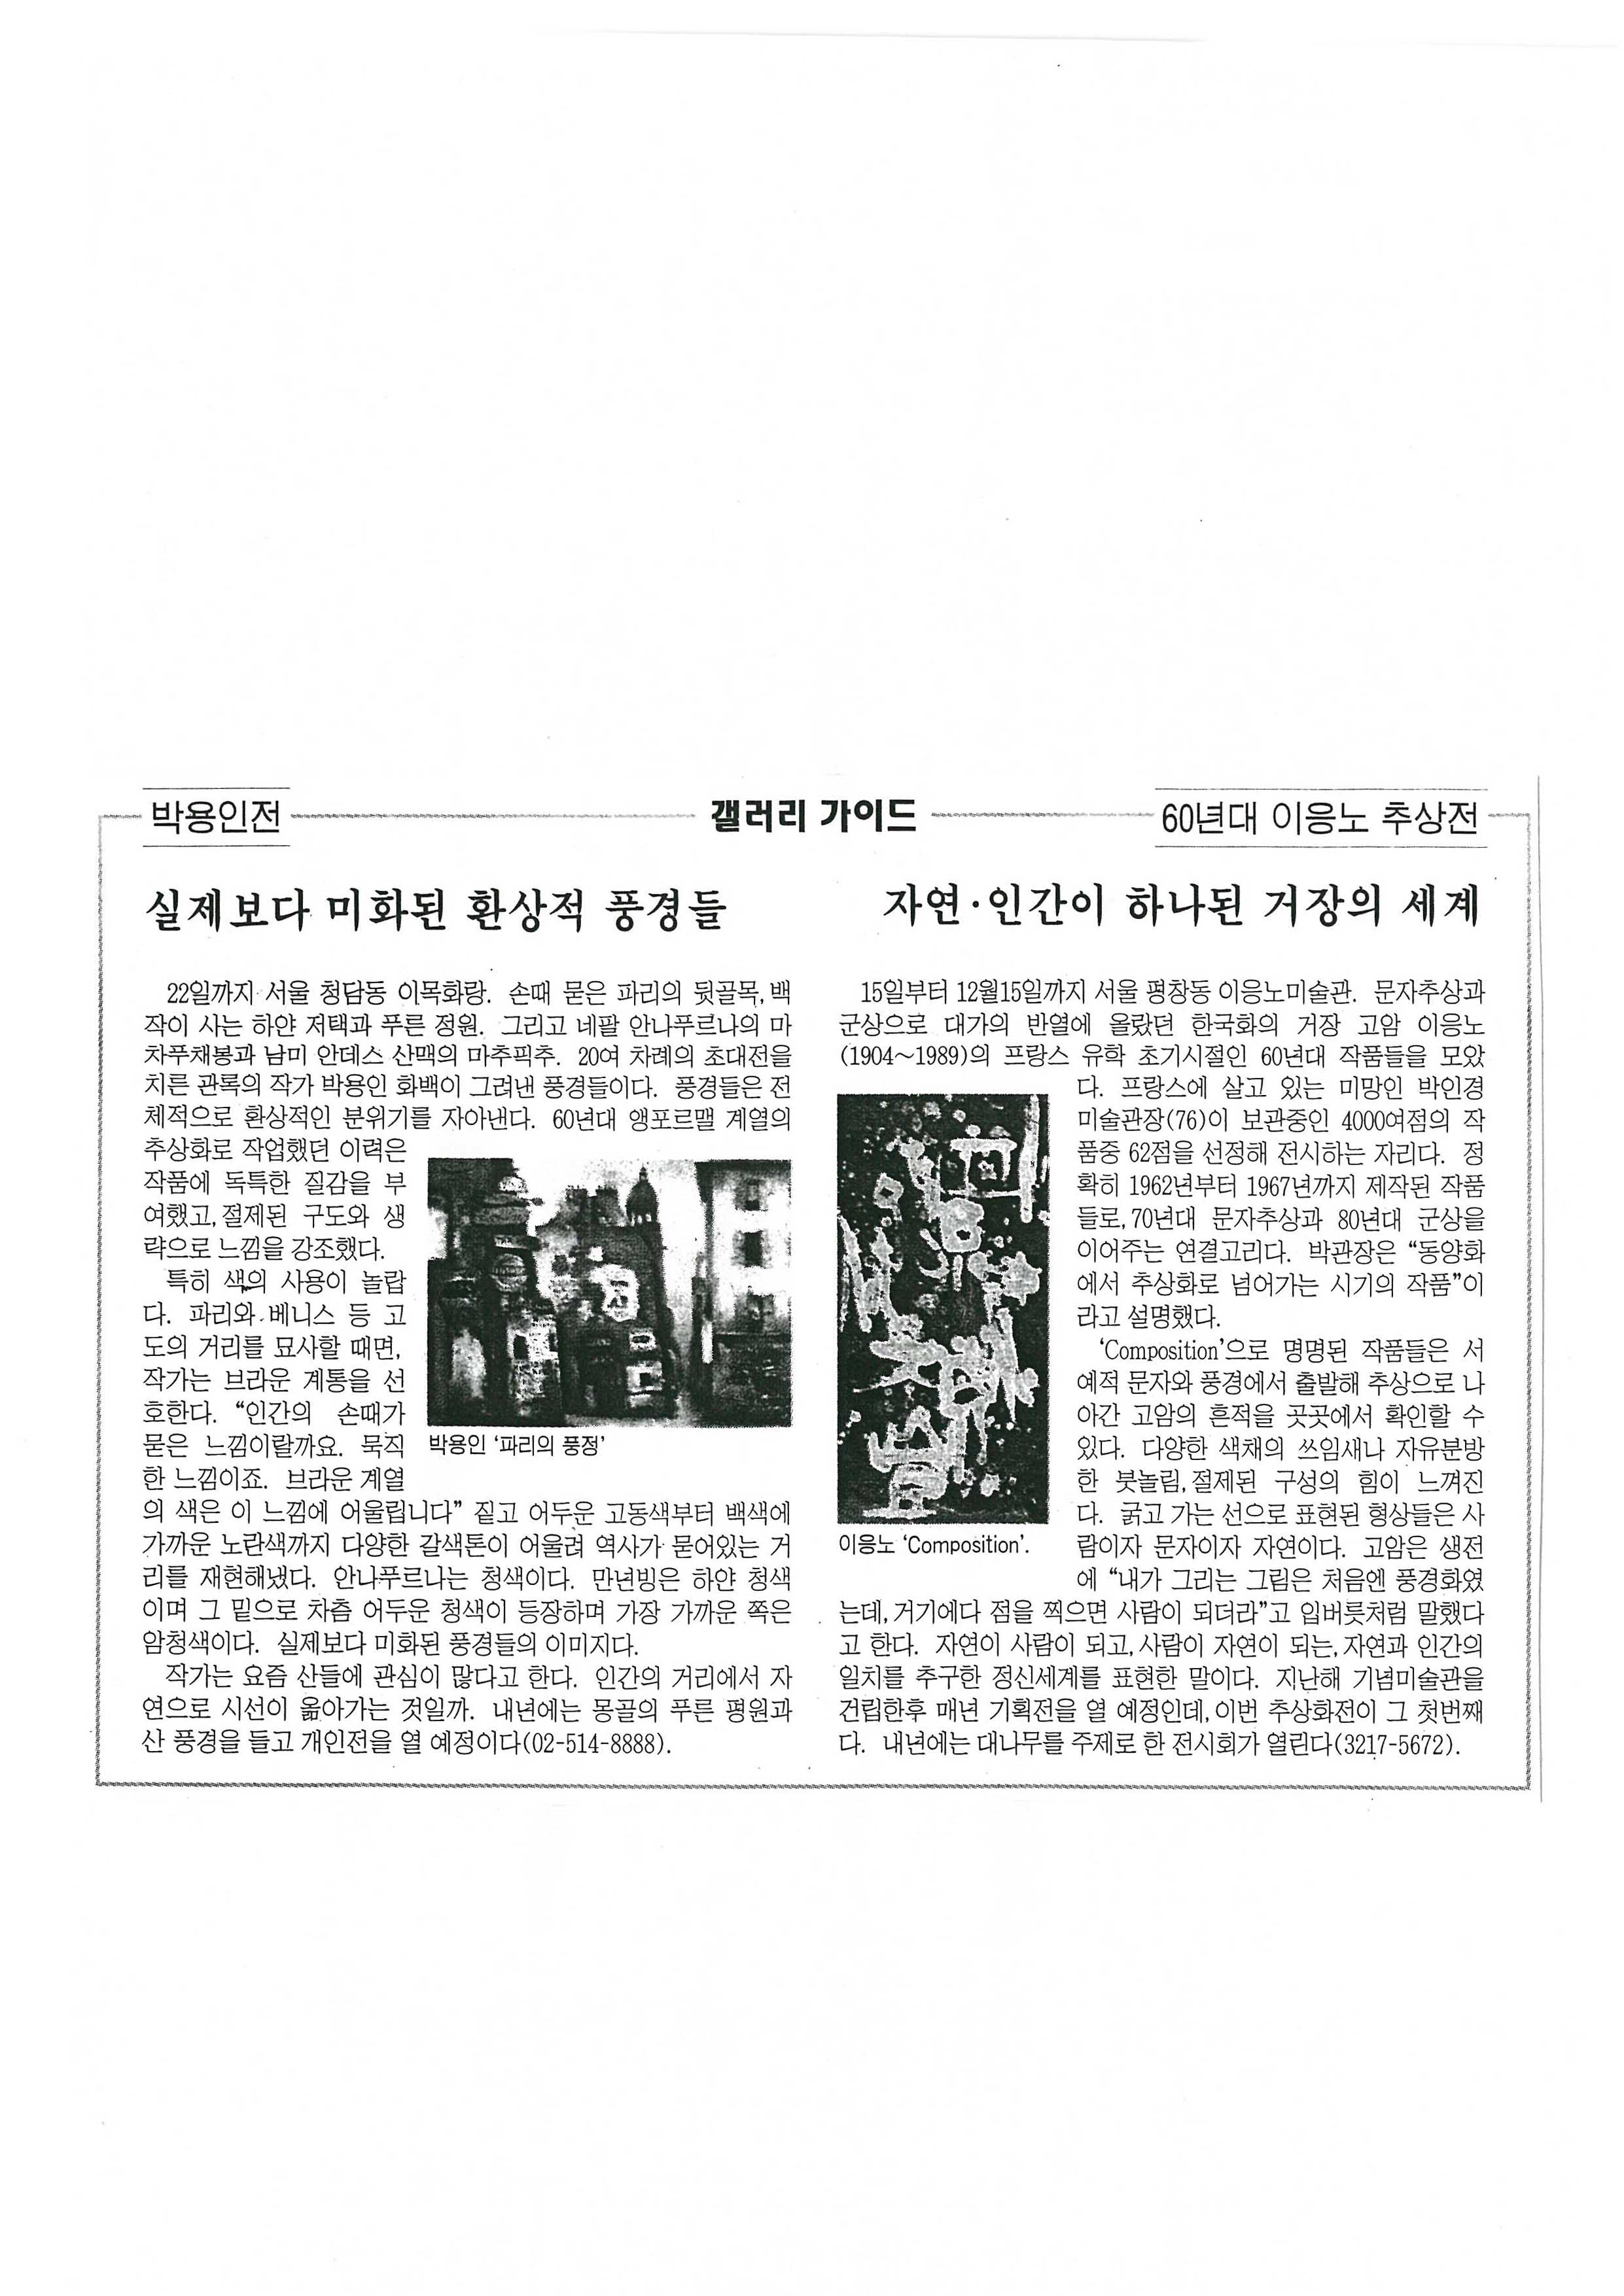  「60년대 이응노 추상전 자연·인간이 하나된 거장의 세계」, 『국민일보』 